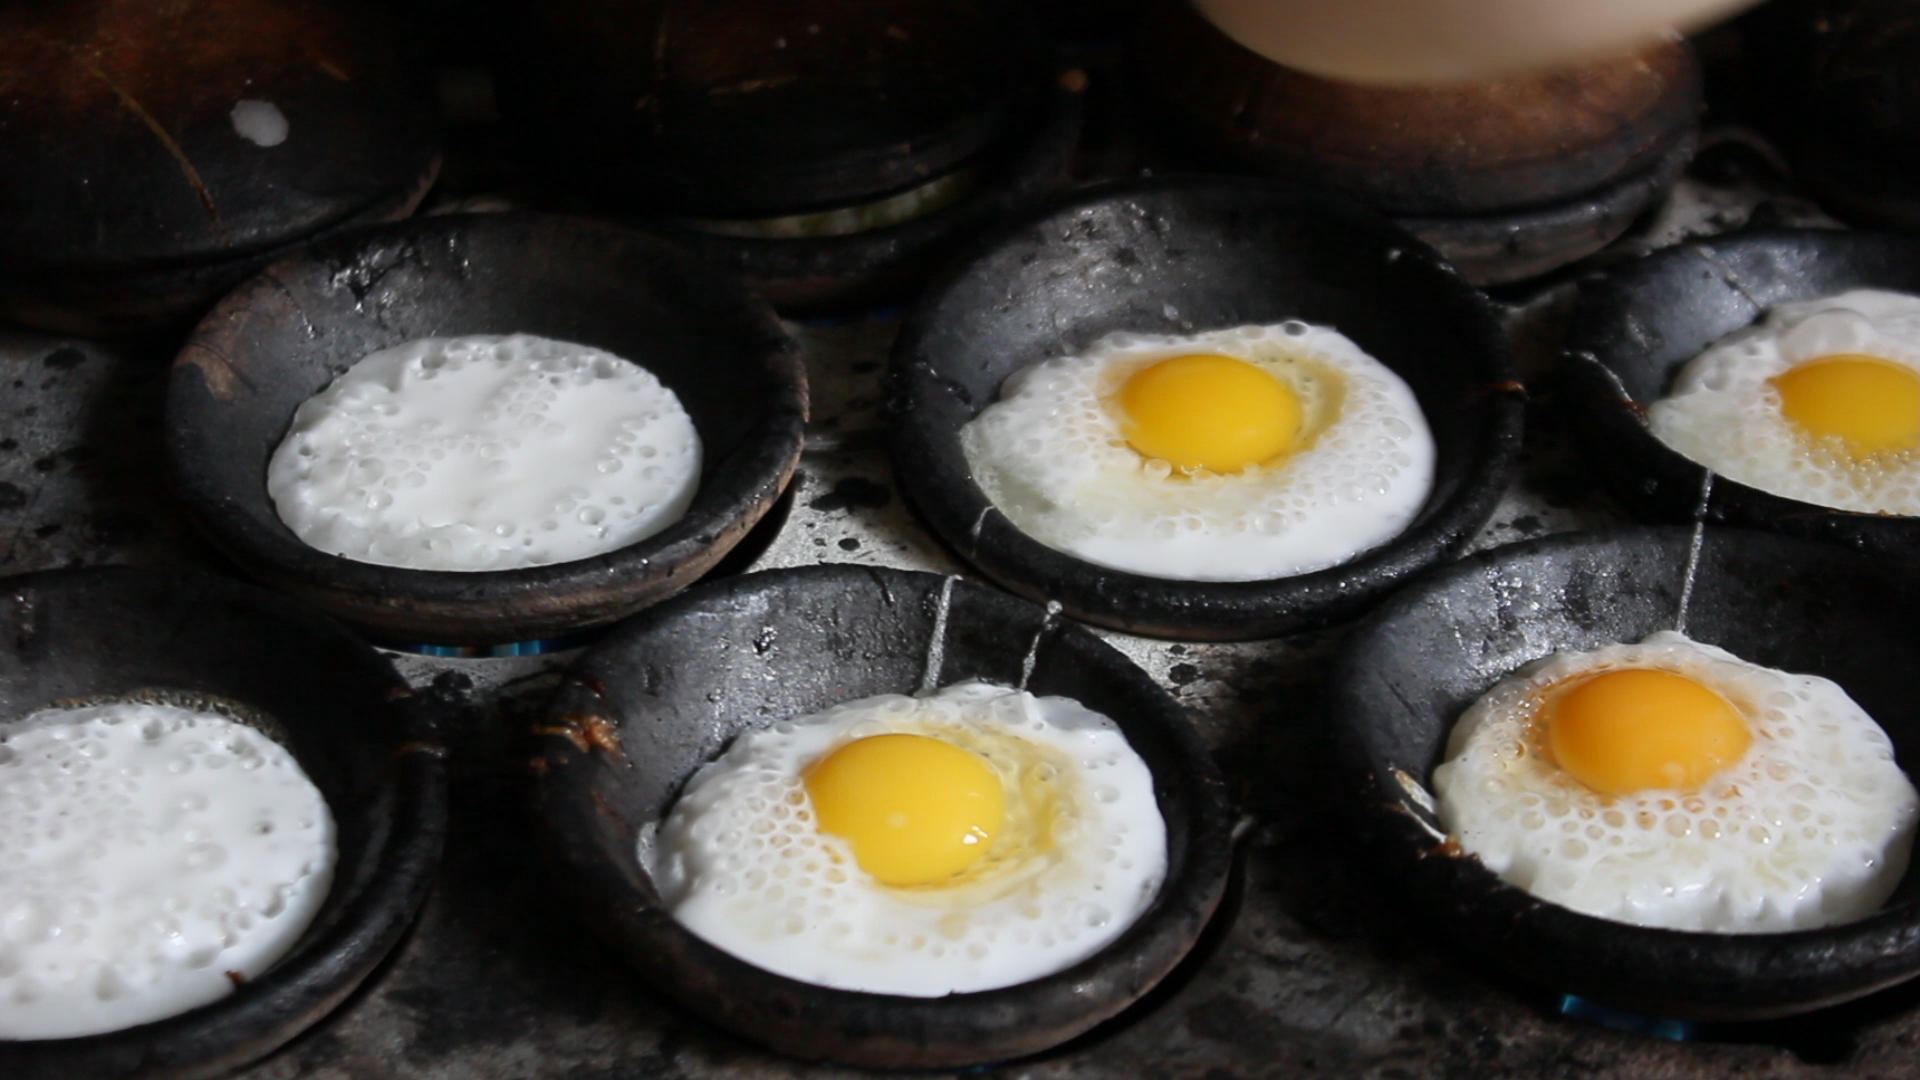 Lúc đầu bánh căn chỉ có nhân trứng, về sau được biến tấu thêm nhiều loại nhân khác. 